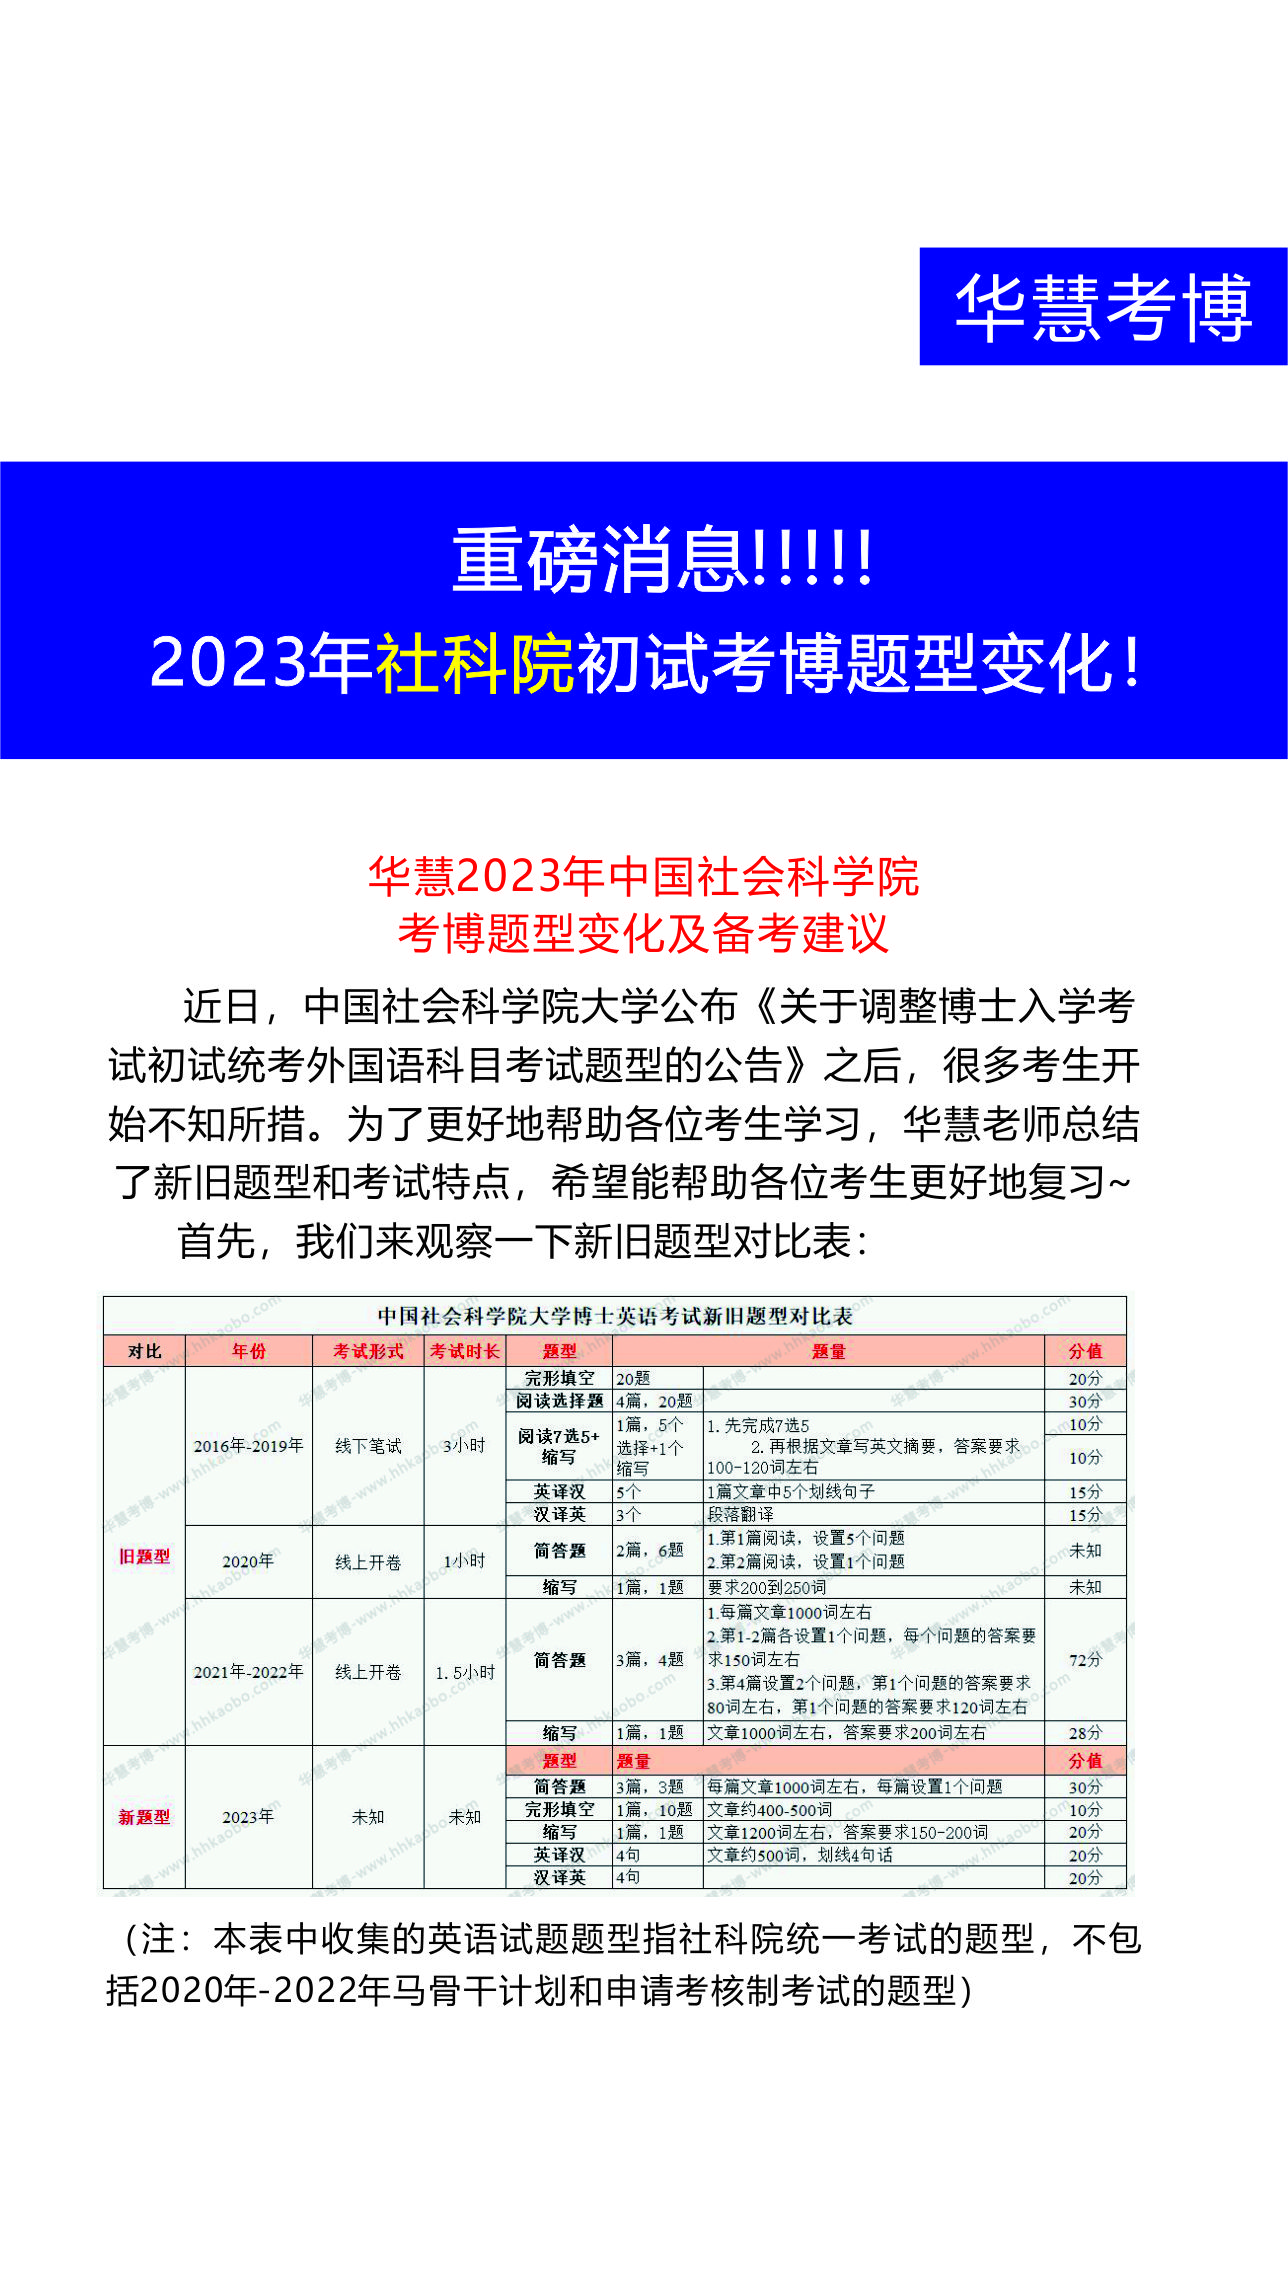 重榜消息，2023年中国社会科学院考博英语题型有了重大改变！